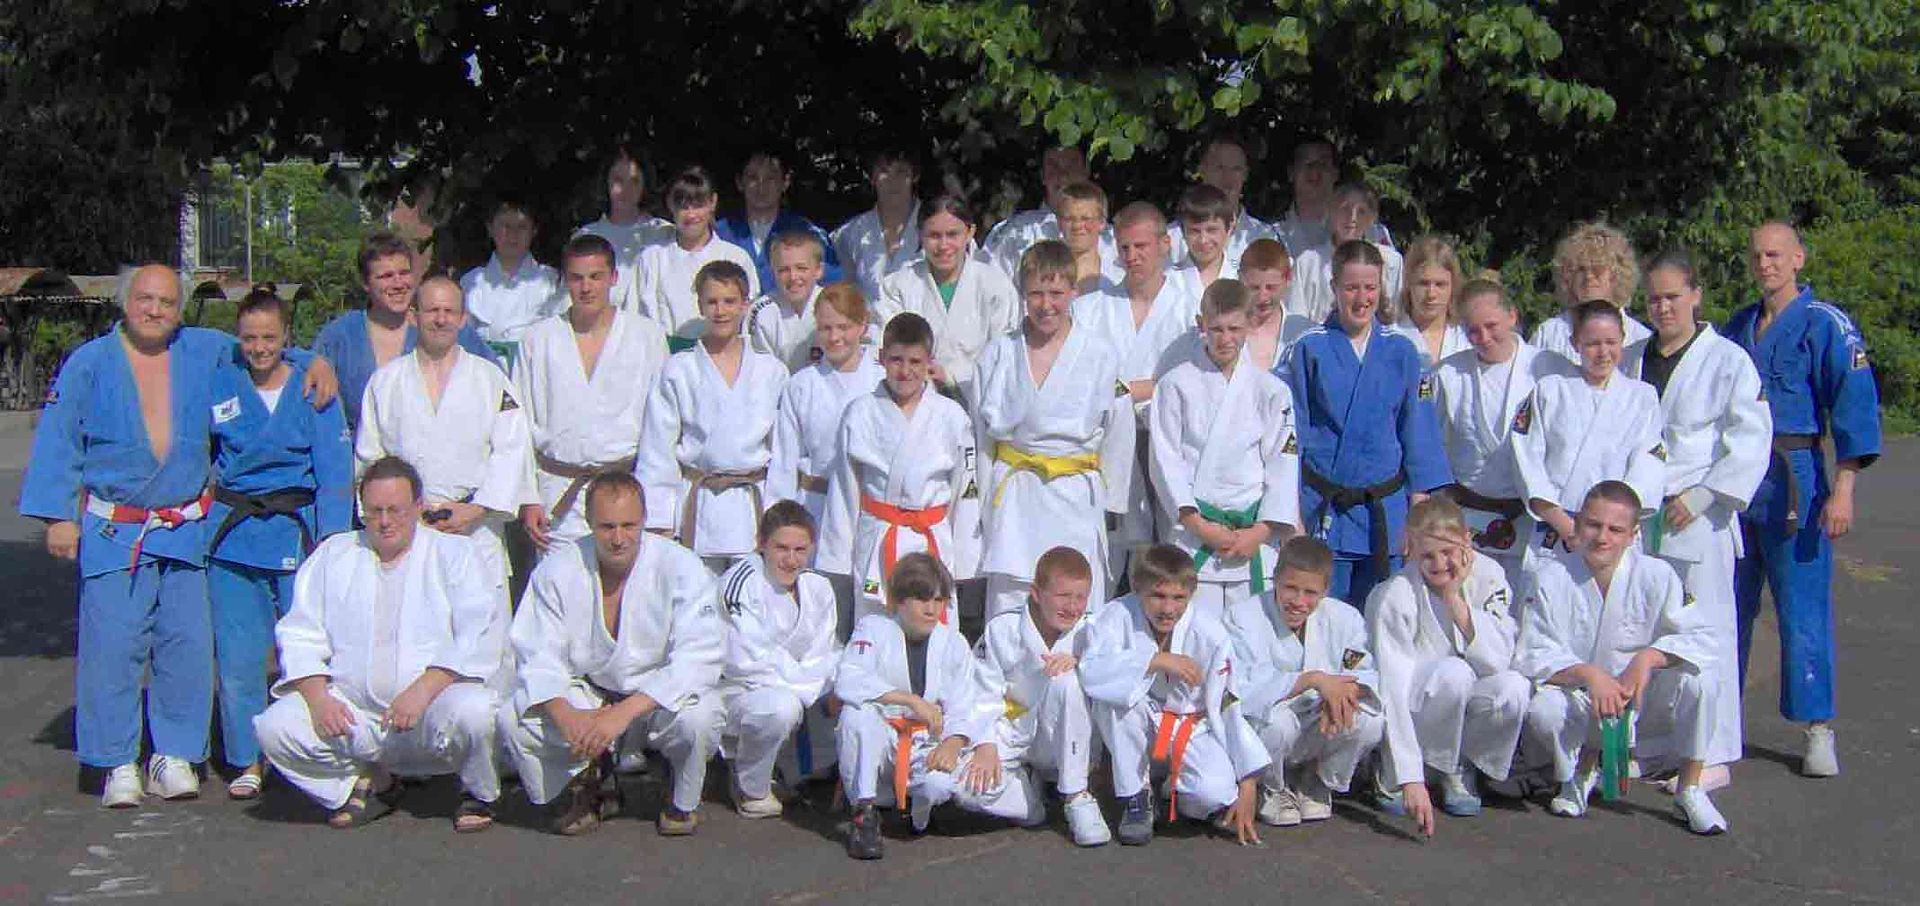 Wirral Judo Club and TuS Hemannsburg Judo Club